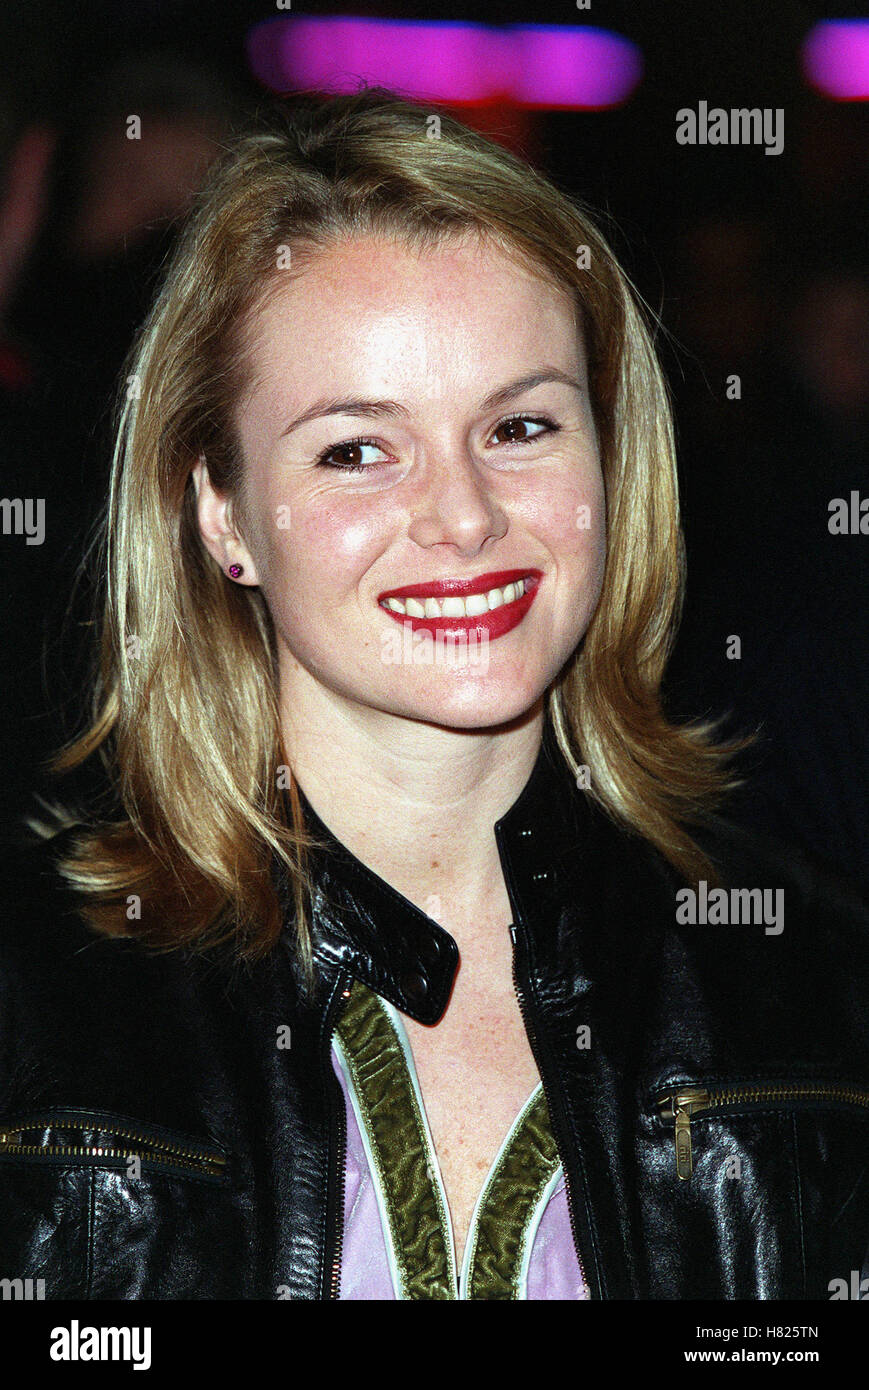 Amanda holden 2000